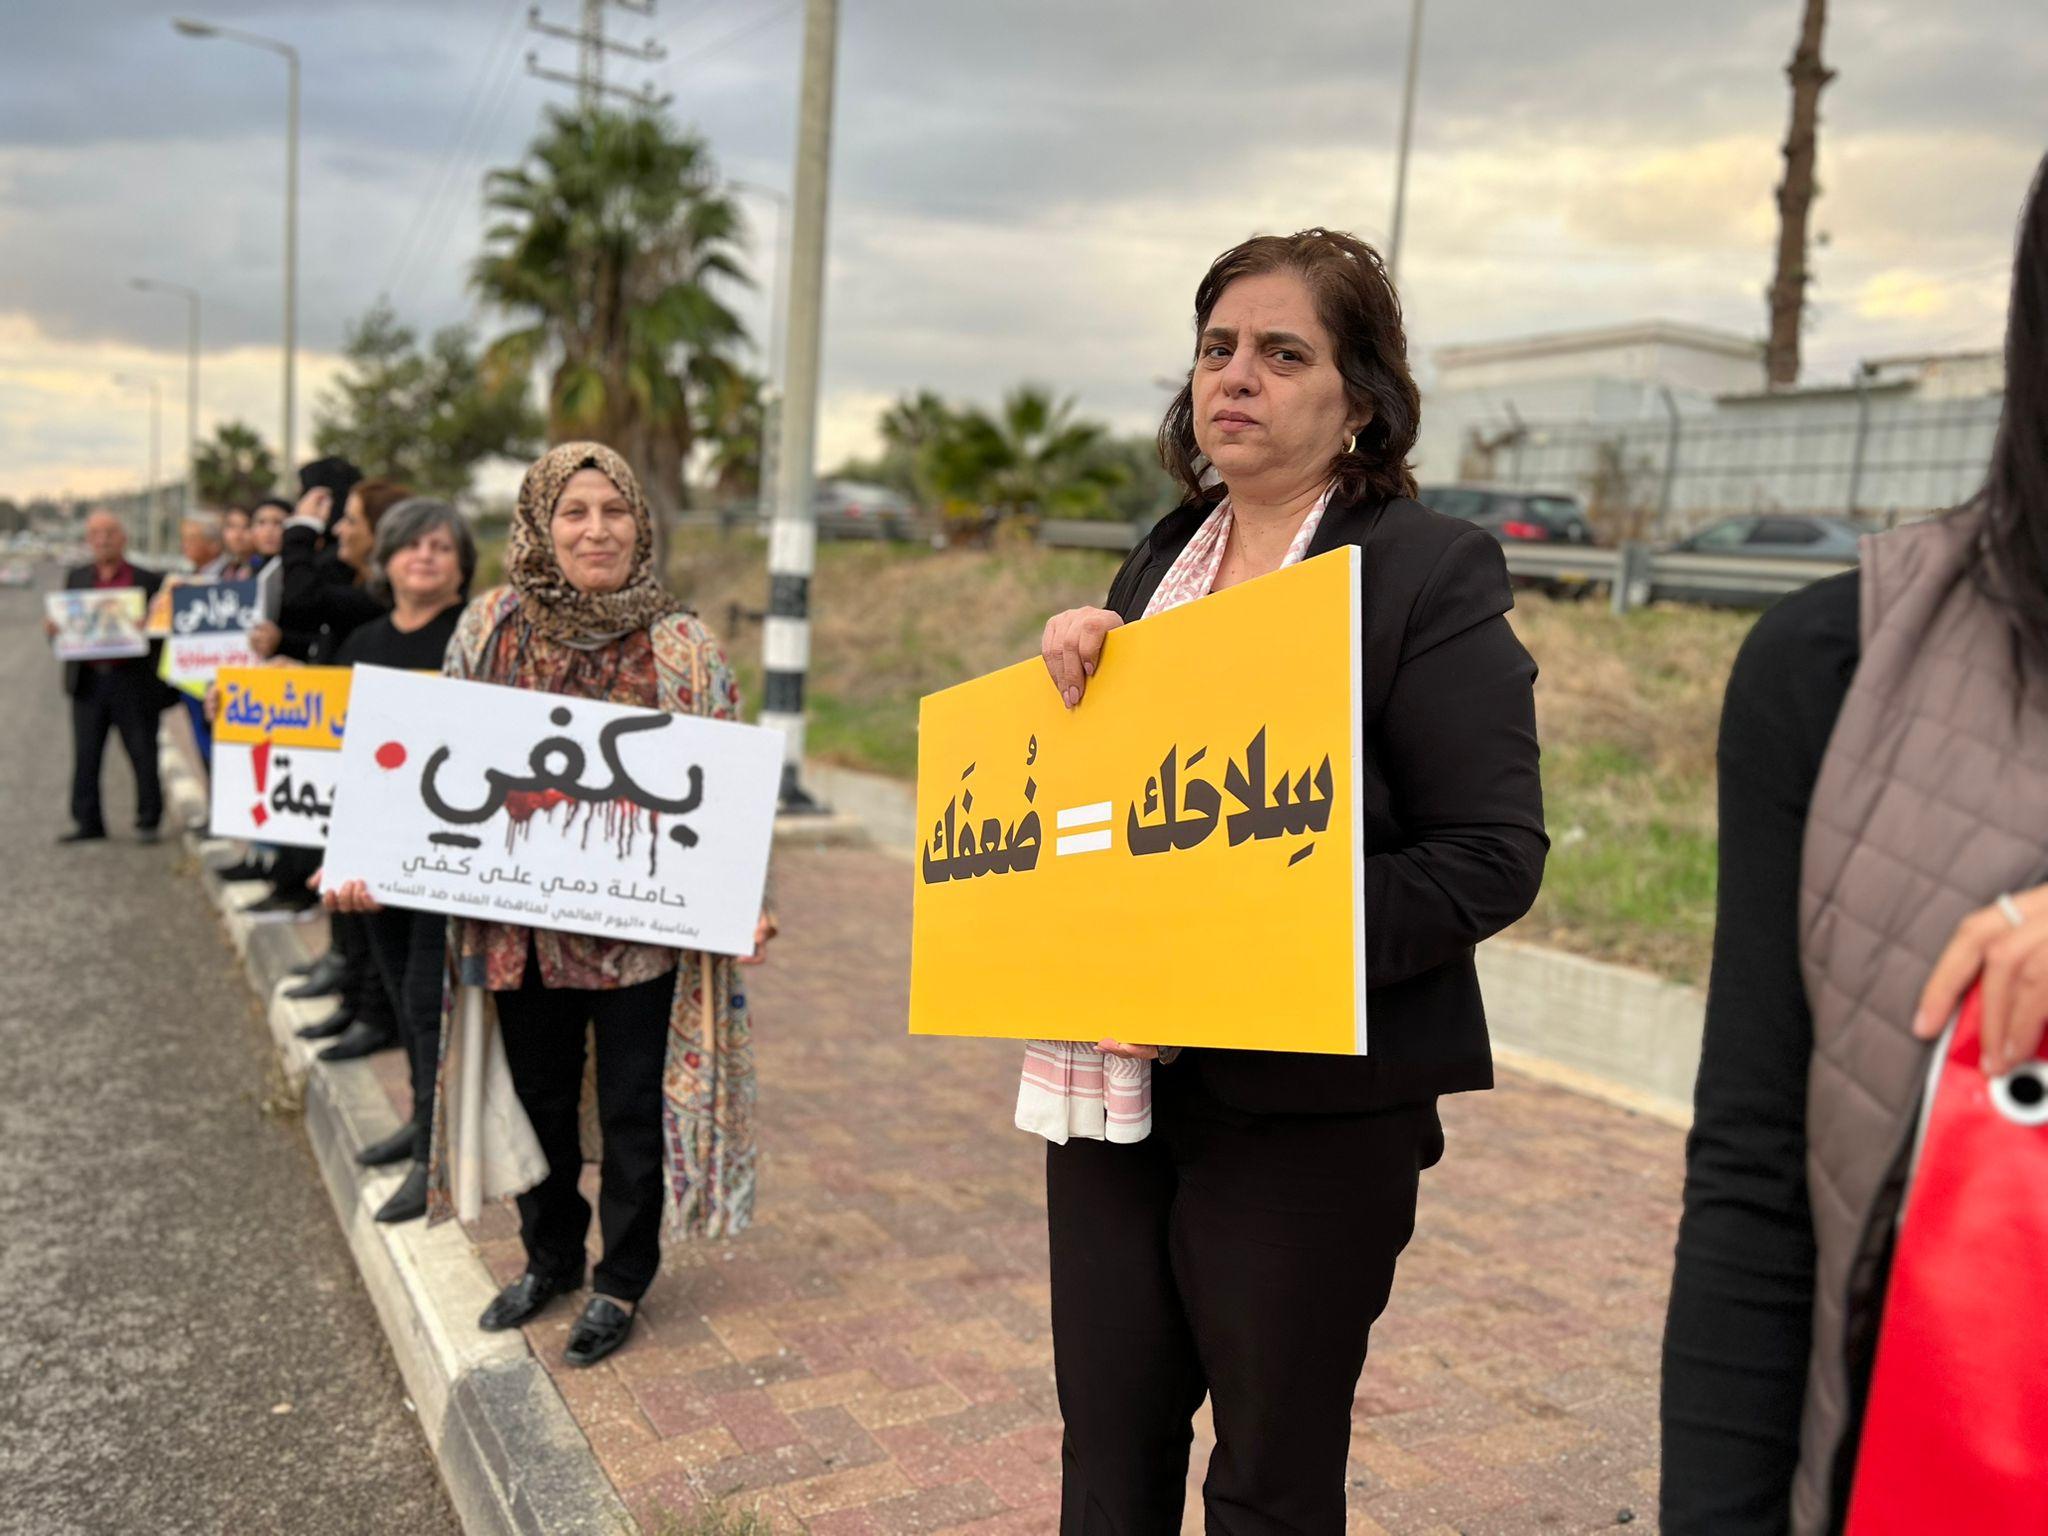 وقفتان احتجاجيتان ضد تعنيف المرأة في الشاغور ووادي عارة